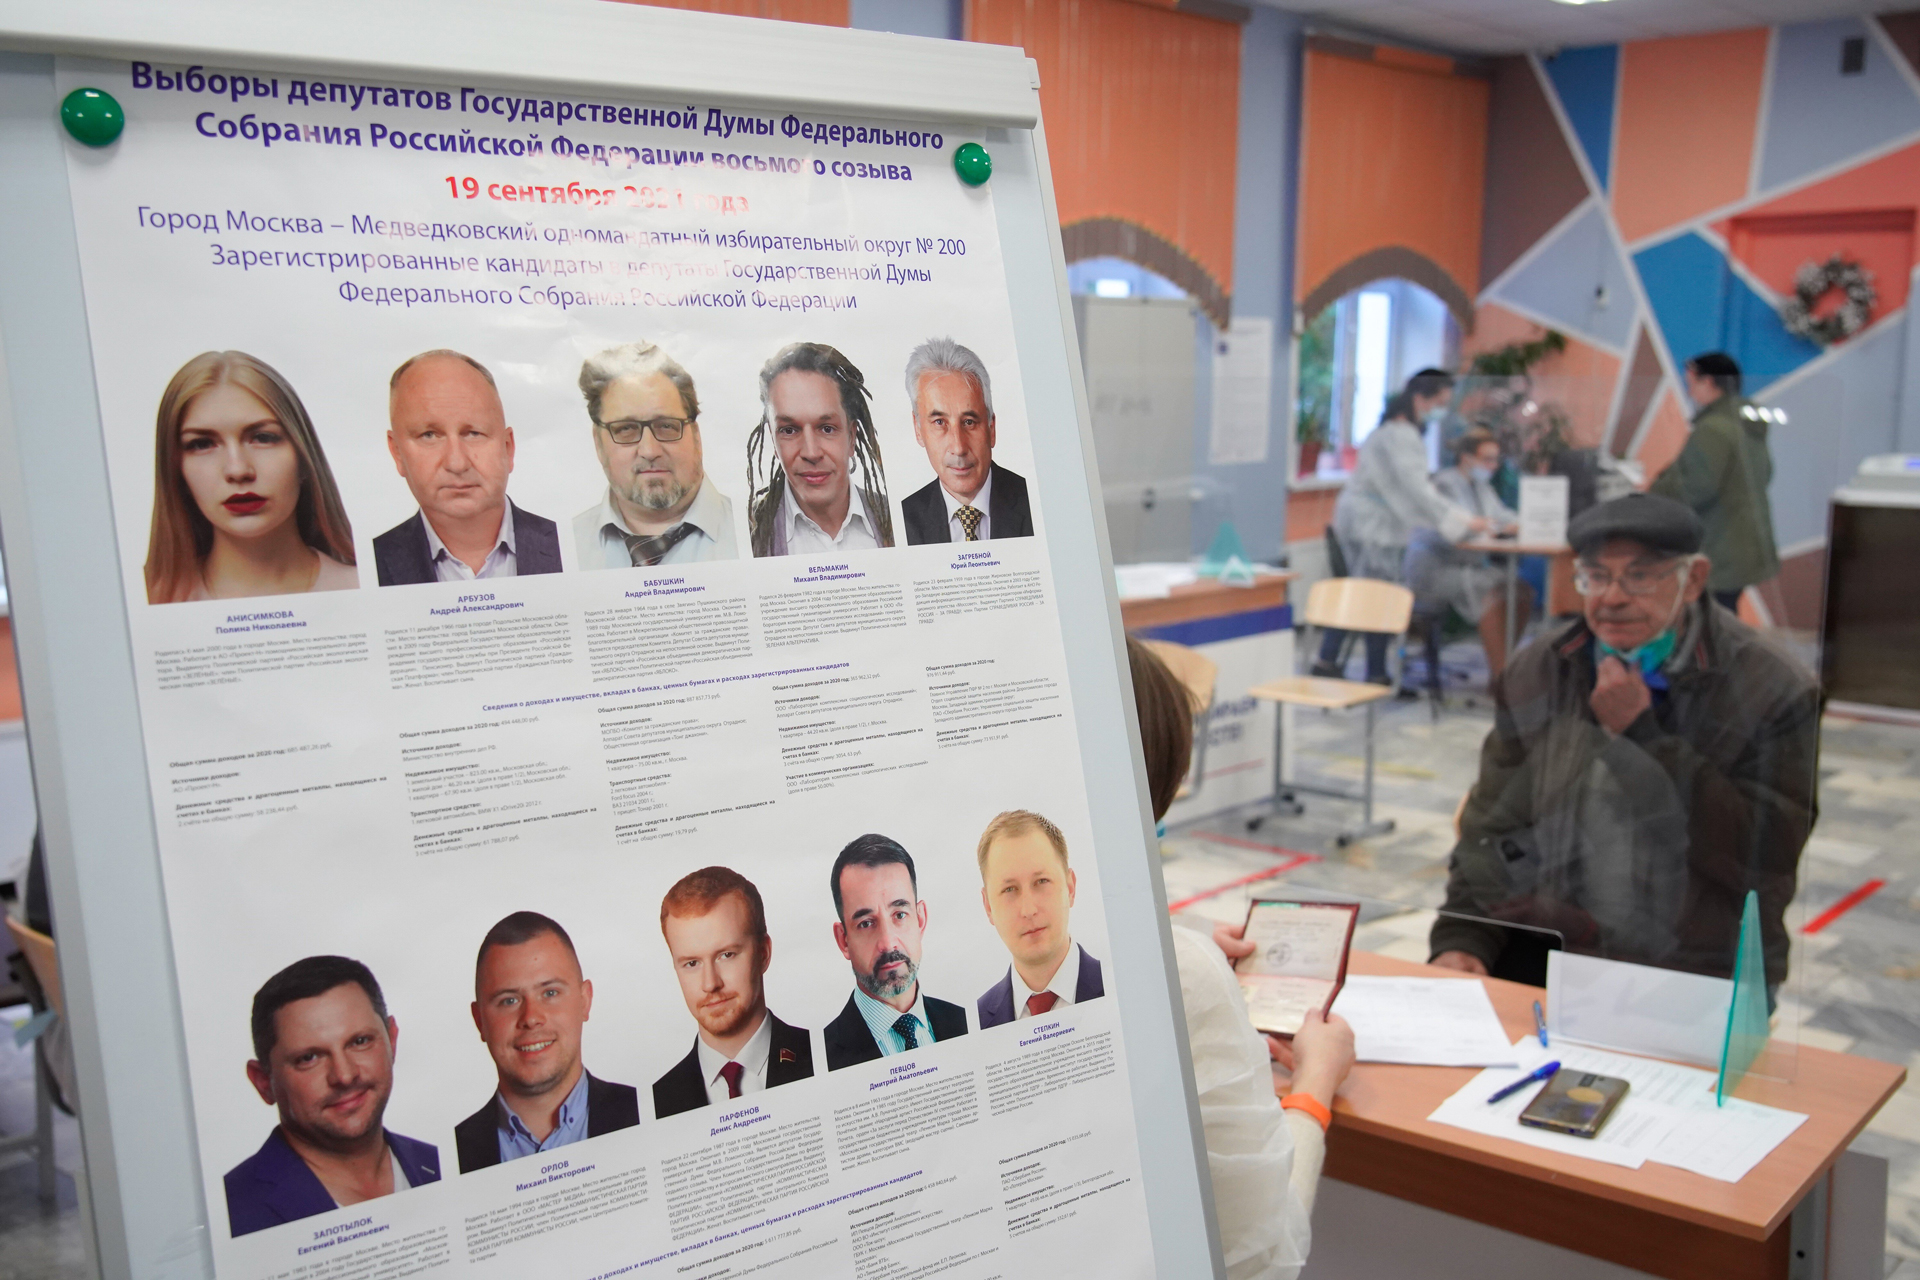 Участки для голосования на выборах депутатов Госдумы в Москве